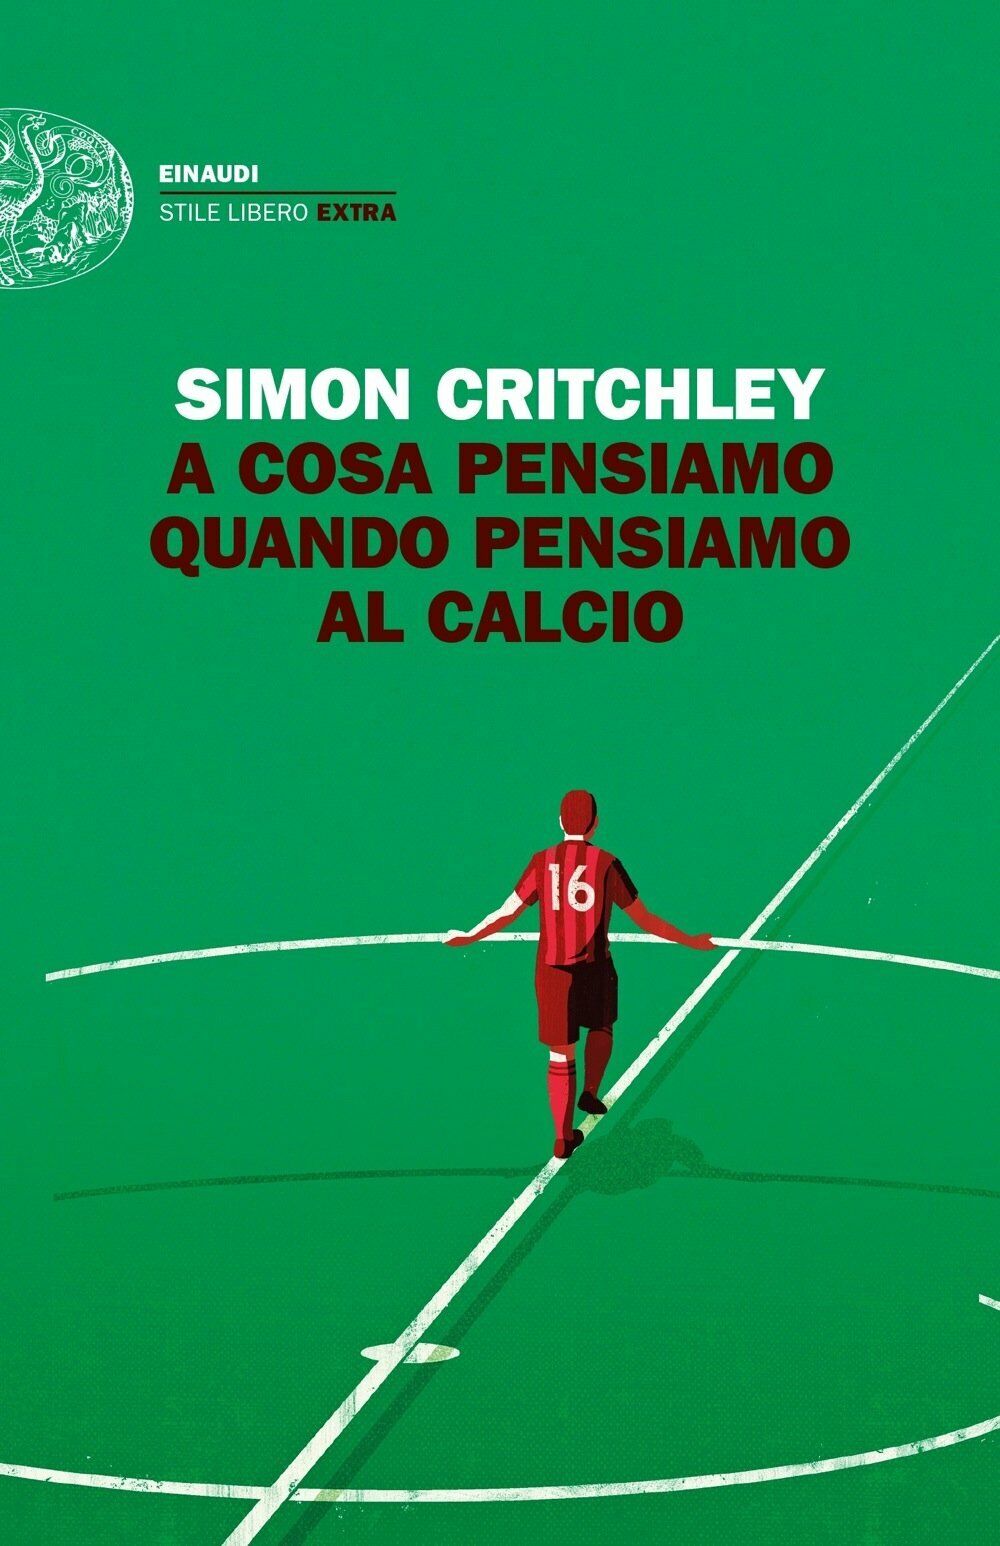 A cosa pensiamo quando pensiamo al calcio - Simon Critchley - Einaudi, 2018